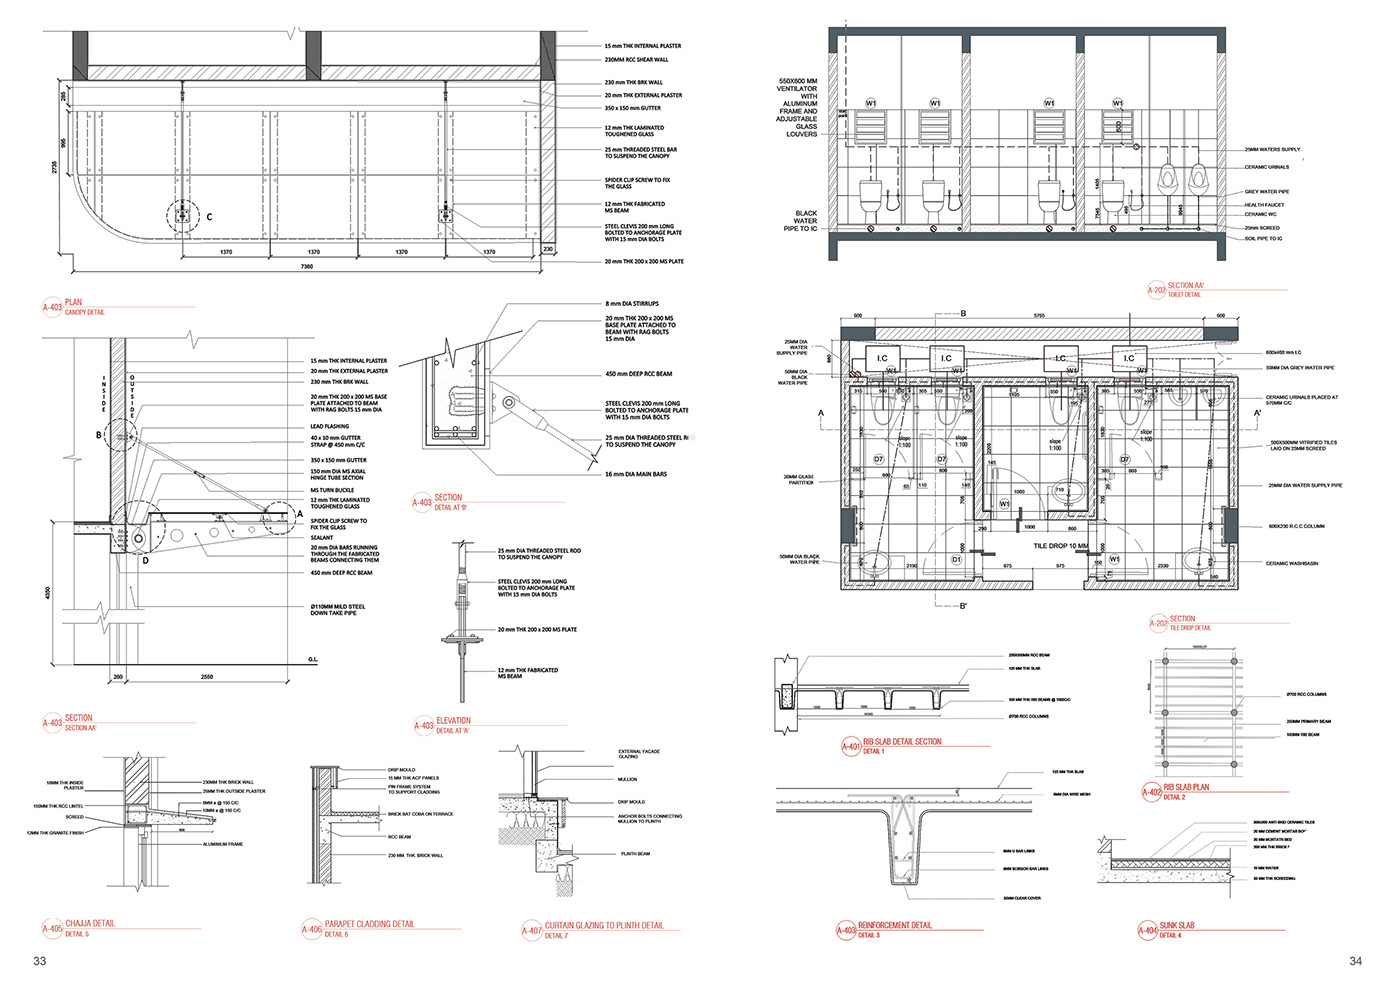 architecture architecture design portfolio CV interior design  Architectural rendering Portfolio Design designer InDesign